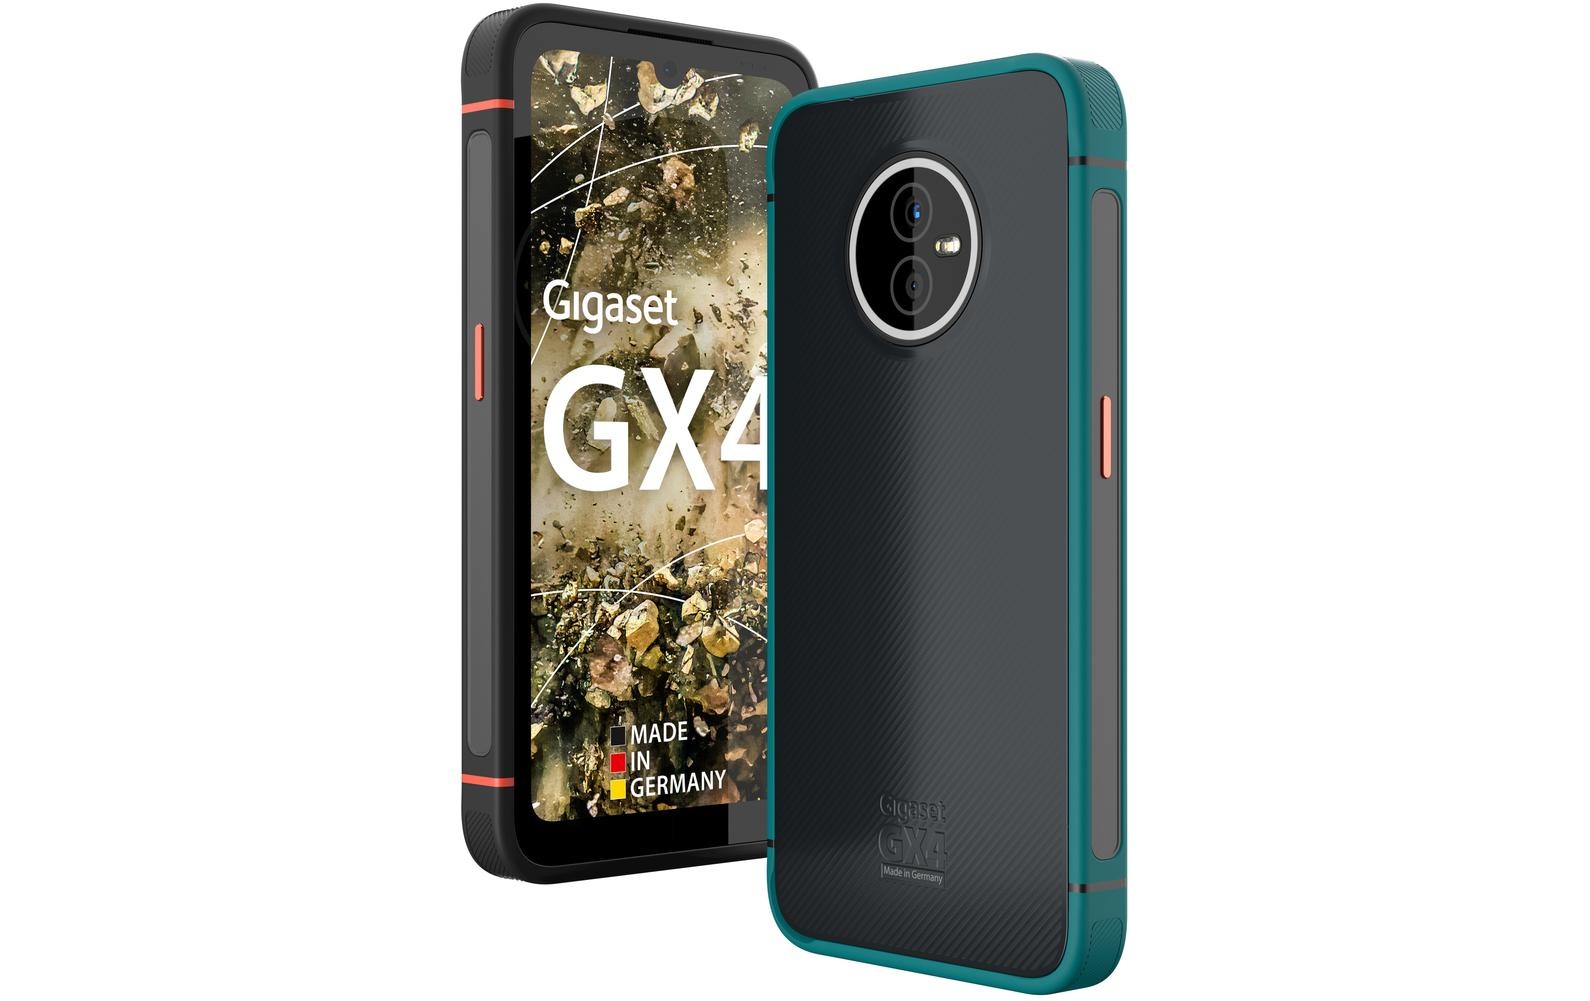 Gigaset Smartphone »GX4 64 GB Petrol«, Petrol, 15,43 cm/6,1 Zoll, 64 GB Speicherplatz, 48 MP Kamera